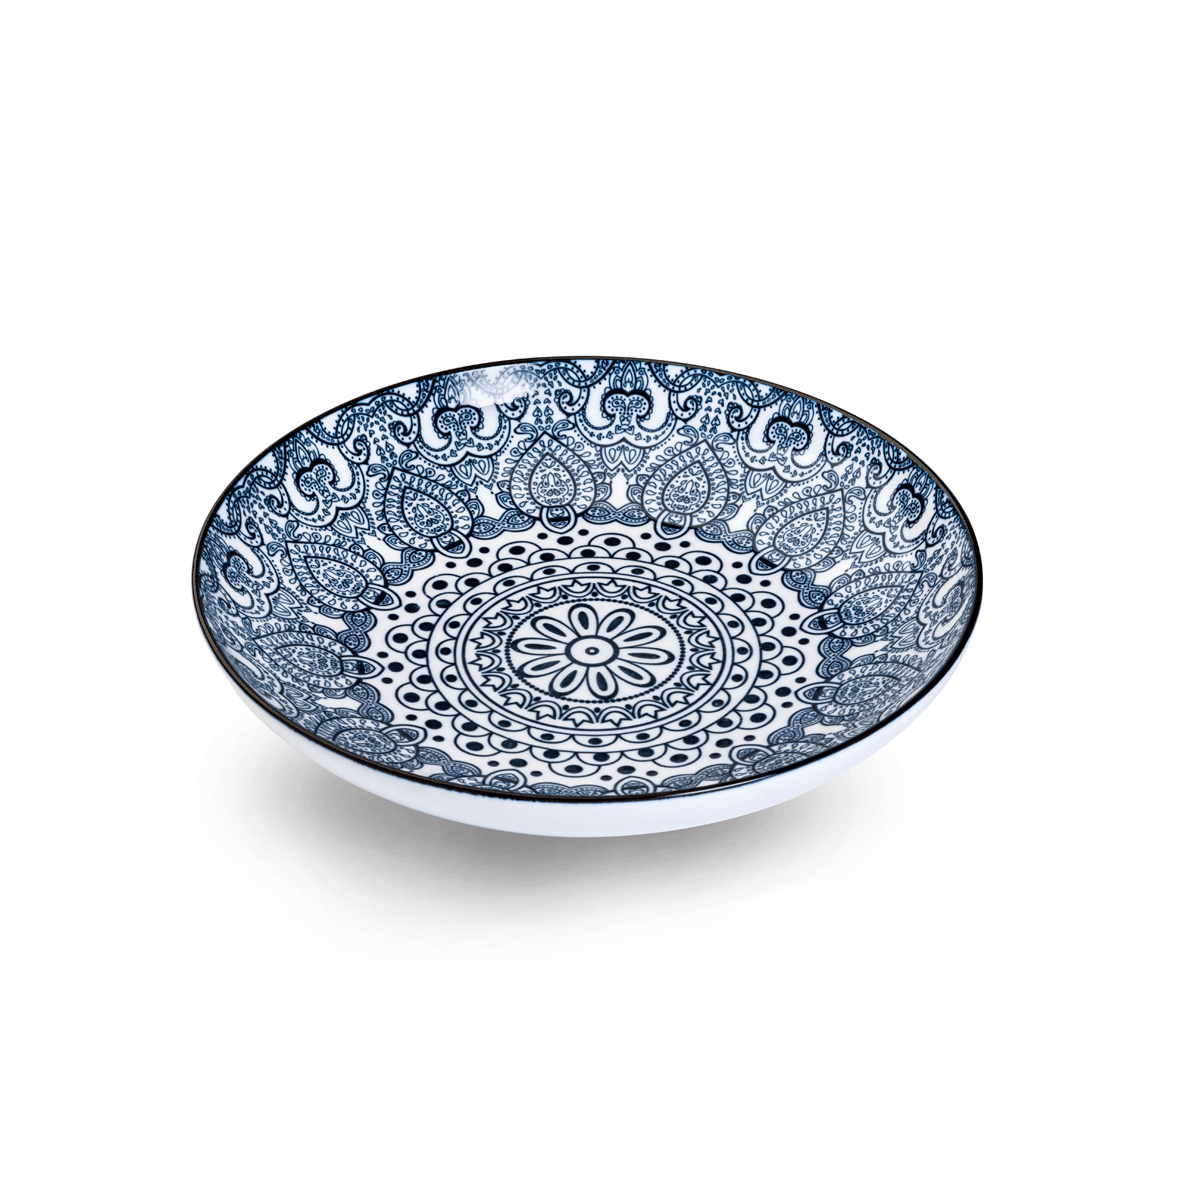 Che Brucia Arabesque Blue Porcelain Soup Plate 20.9 cm / 8" Blue Ivory Porcelain